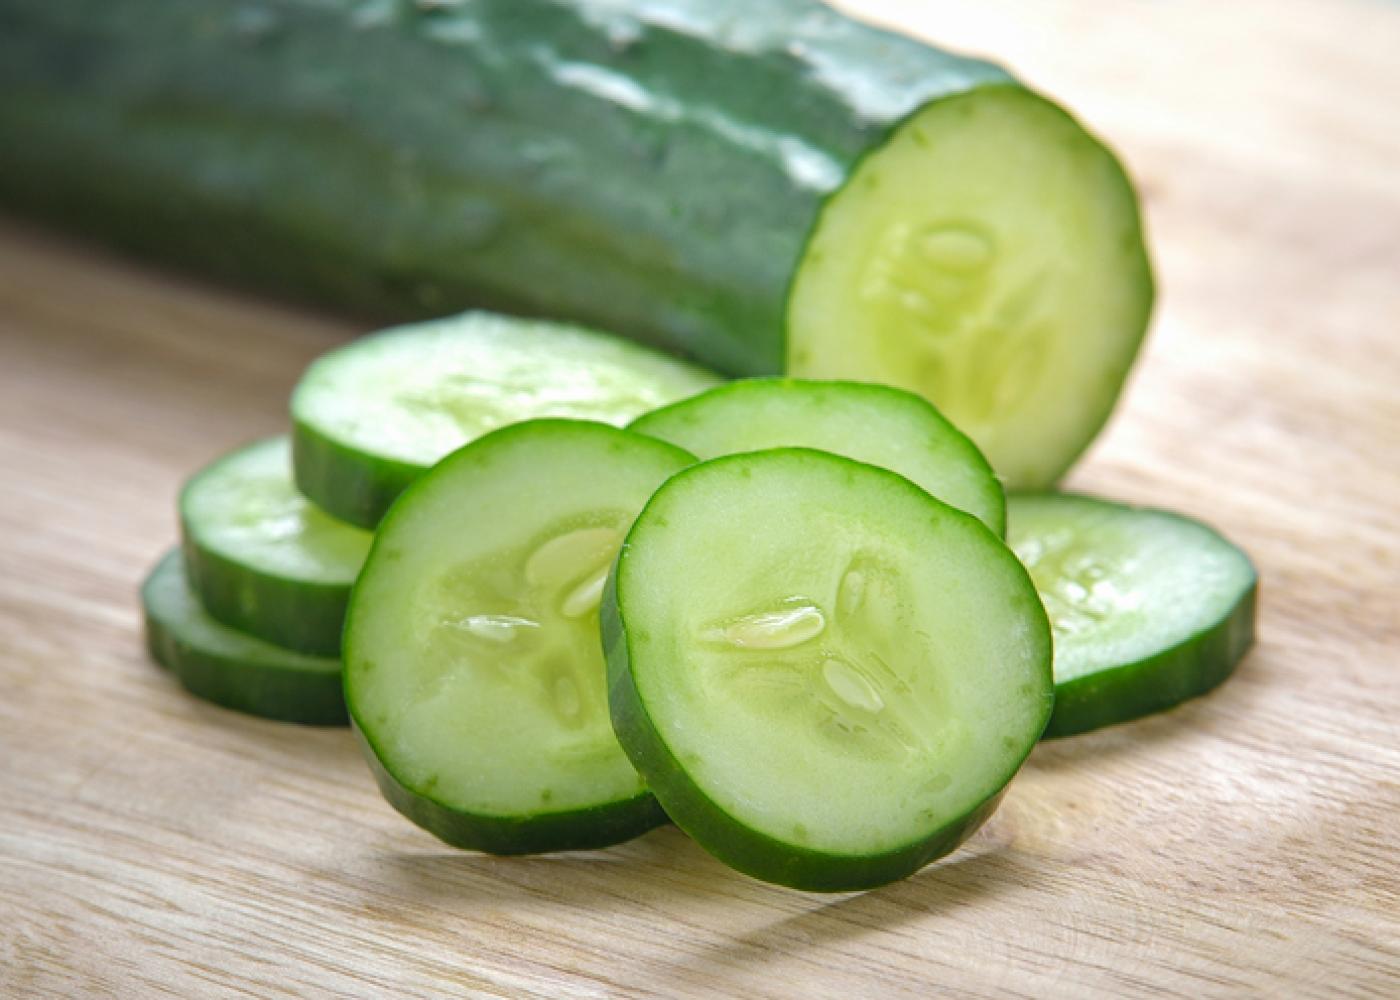 cucumbers2.jpg